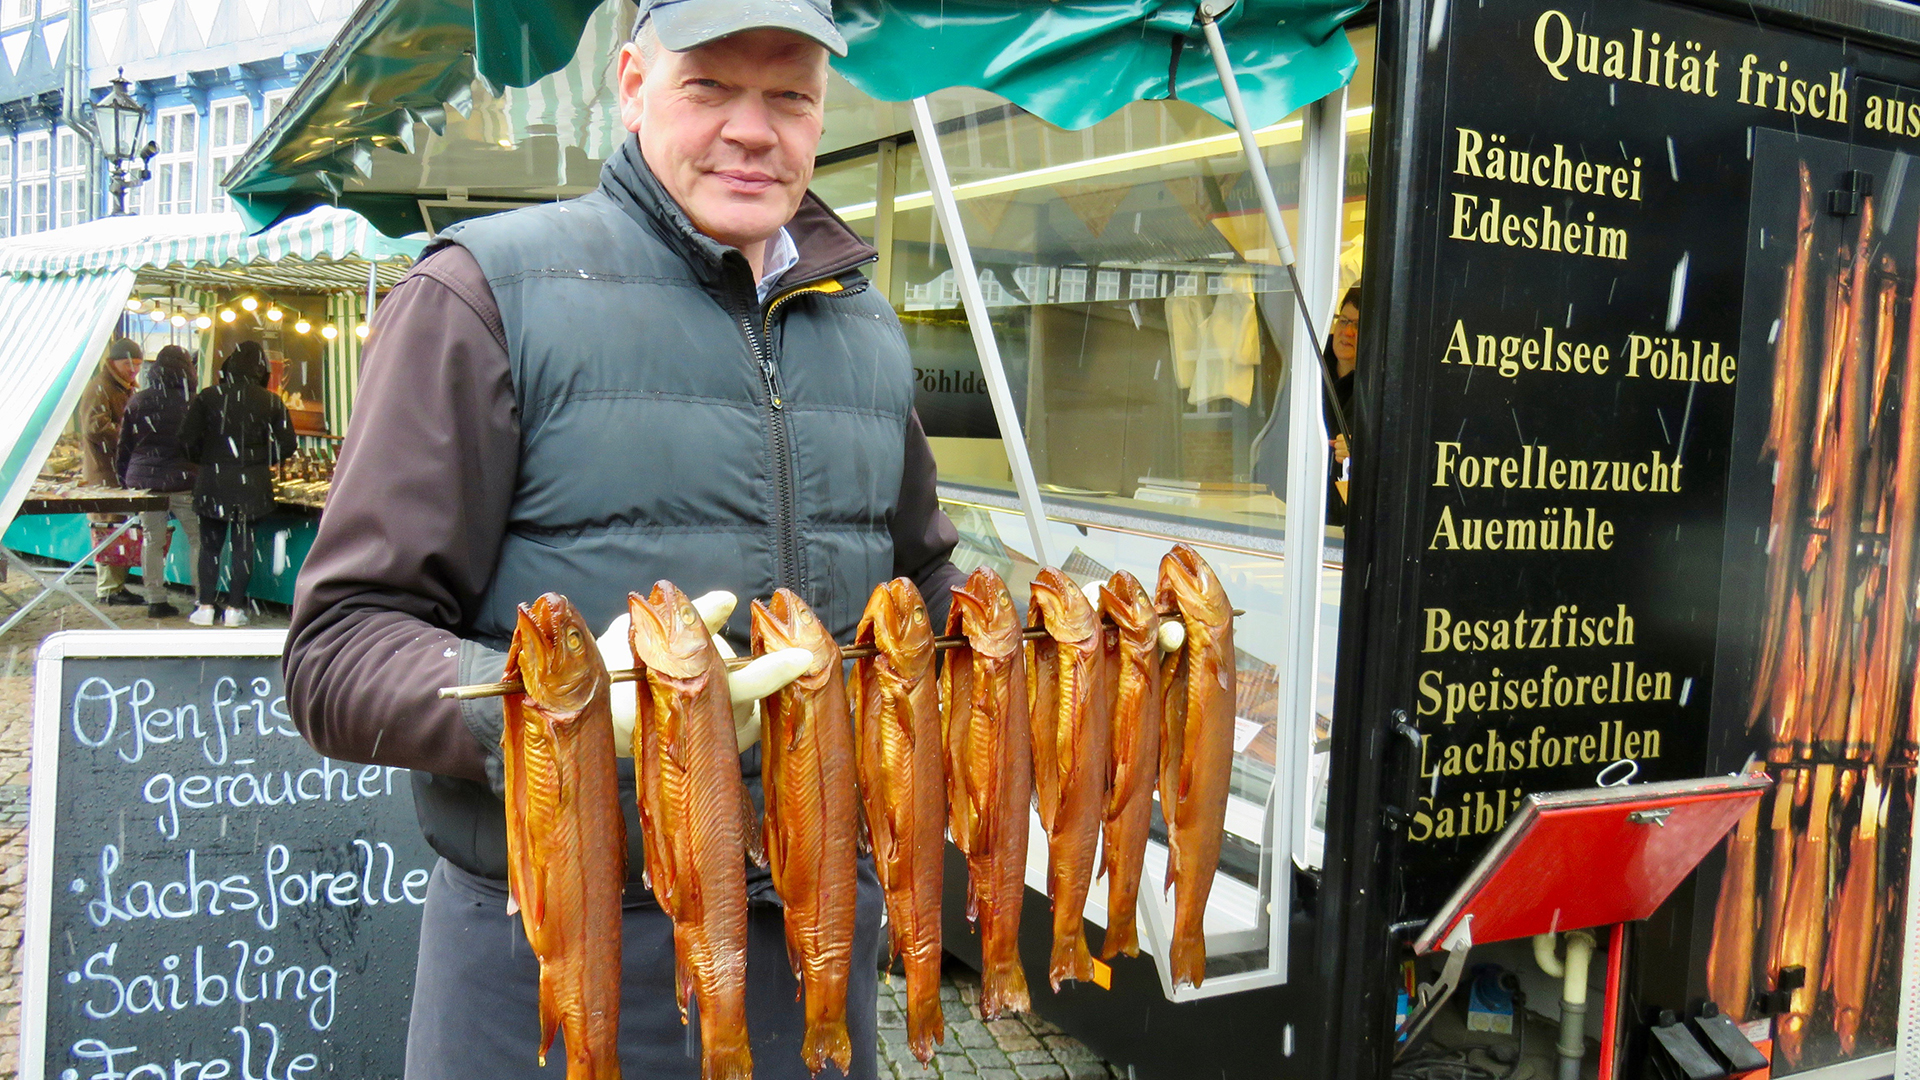 Harald von Löbenstein räuchert jeden Samstag frischen Fisch auf dem Wolfenbütteler Wochenmarkt.